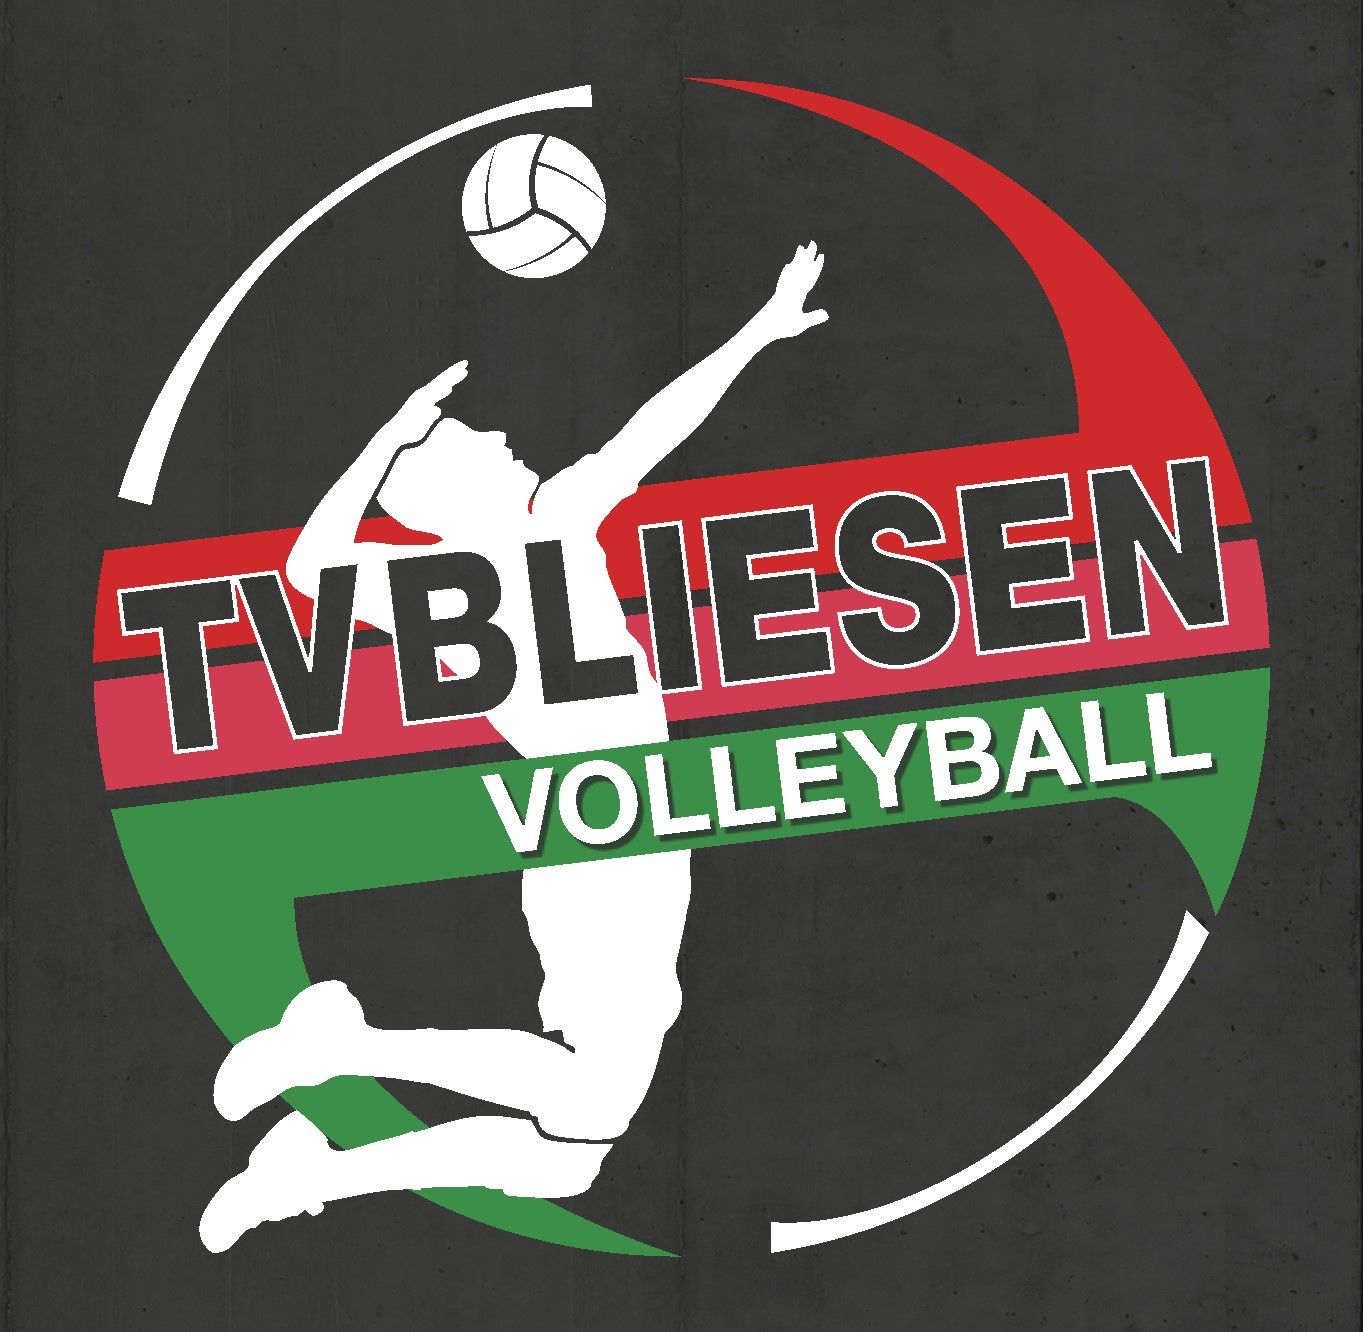 Profilbild des Vereins Verein zur Förderung der Volleyballabteilung des TV Bliesen e.V.